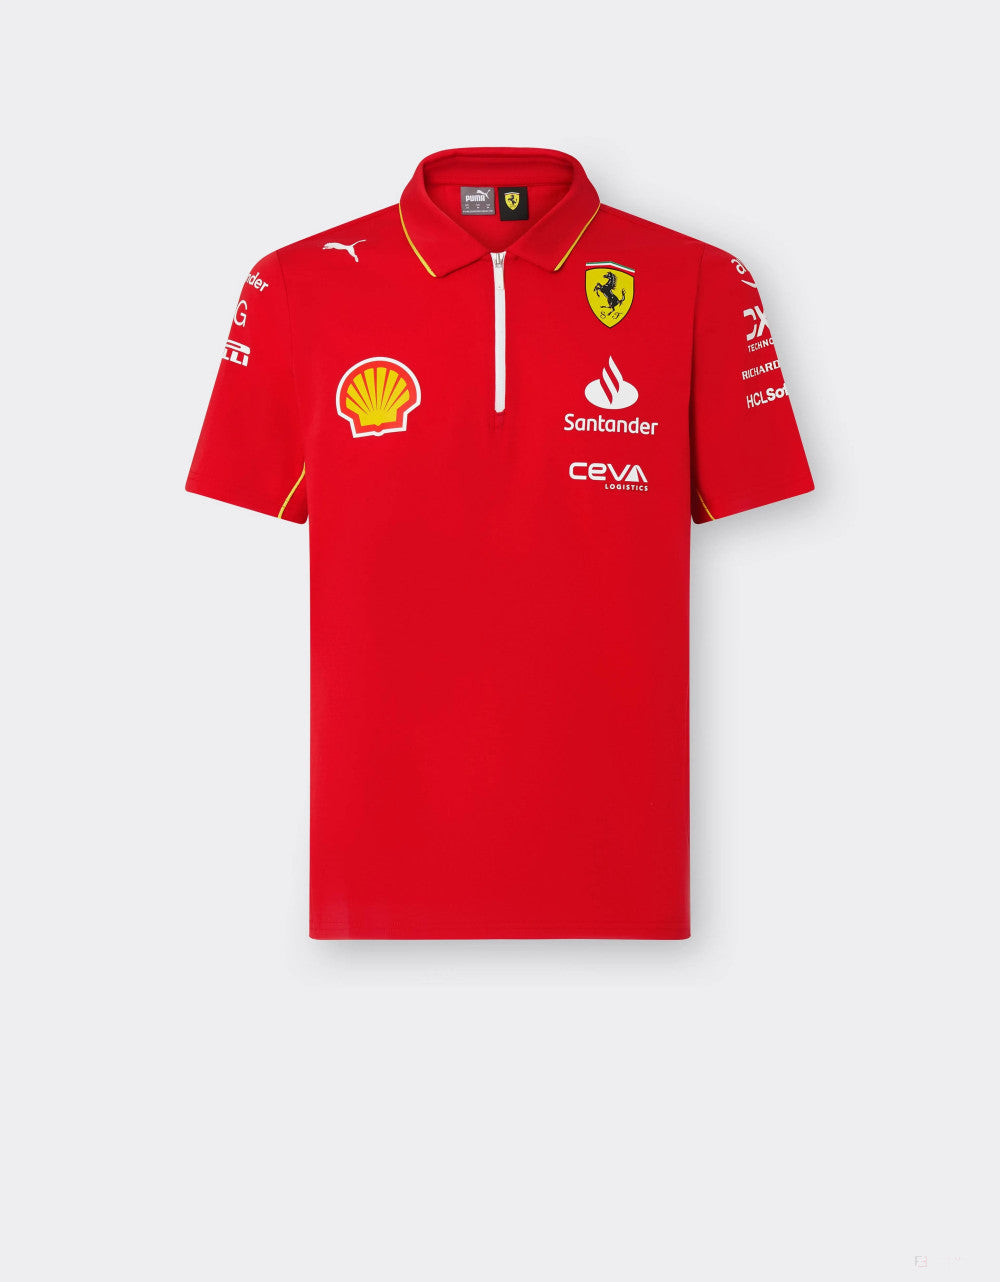 Ferrari polo, Puma, team, red, 2024